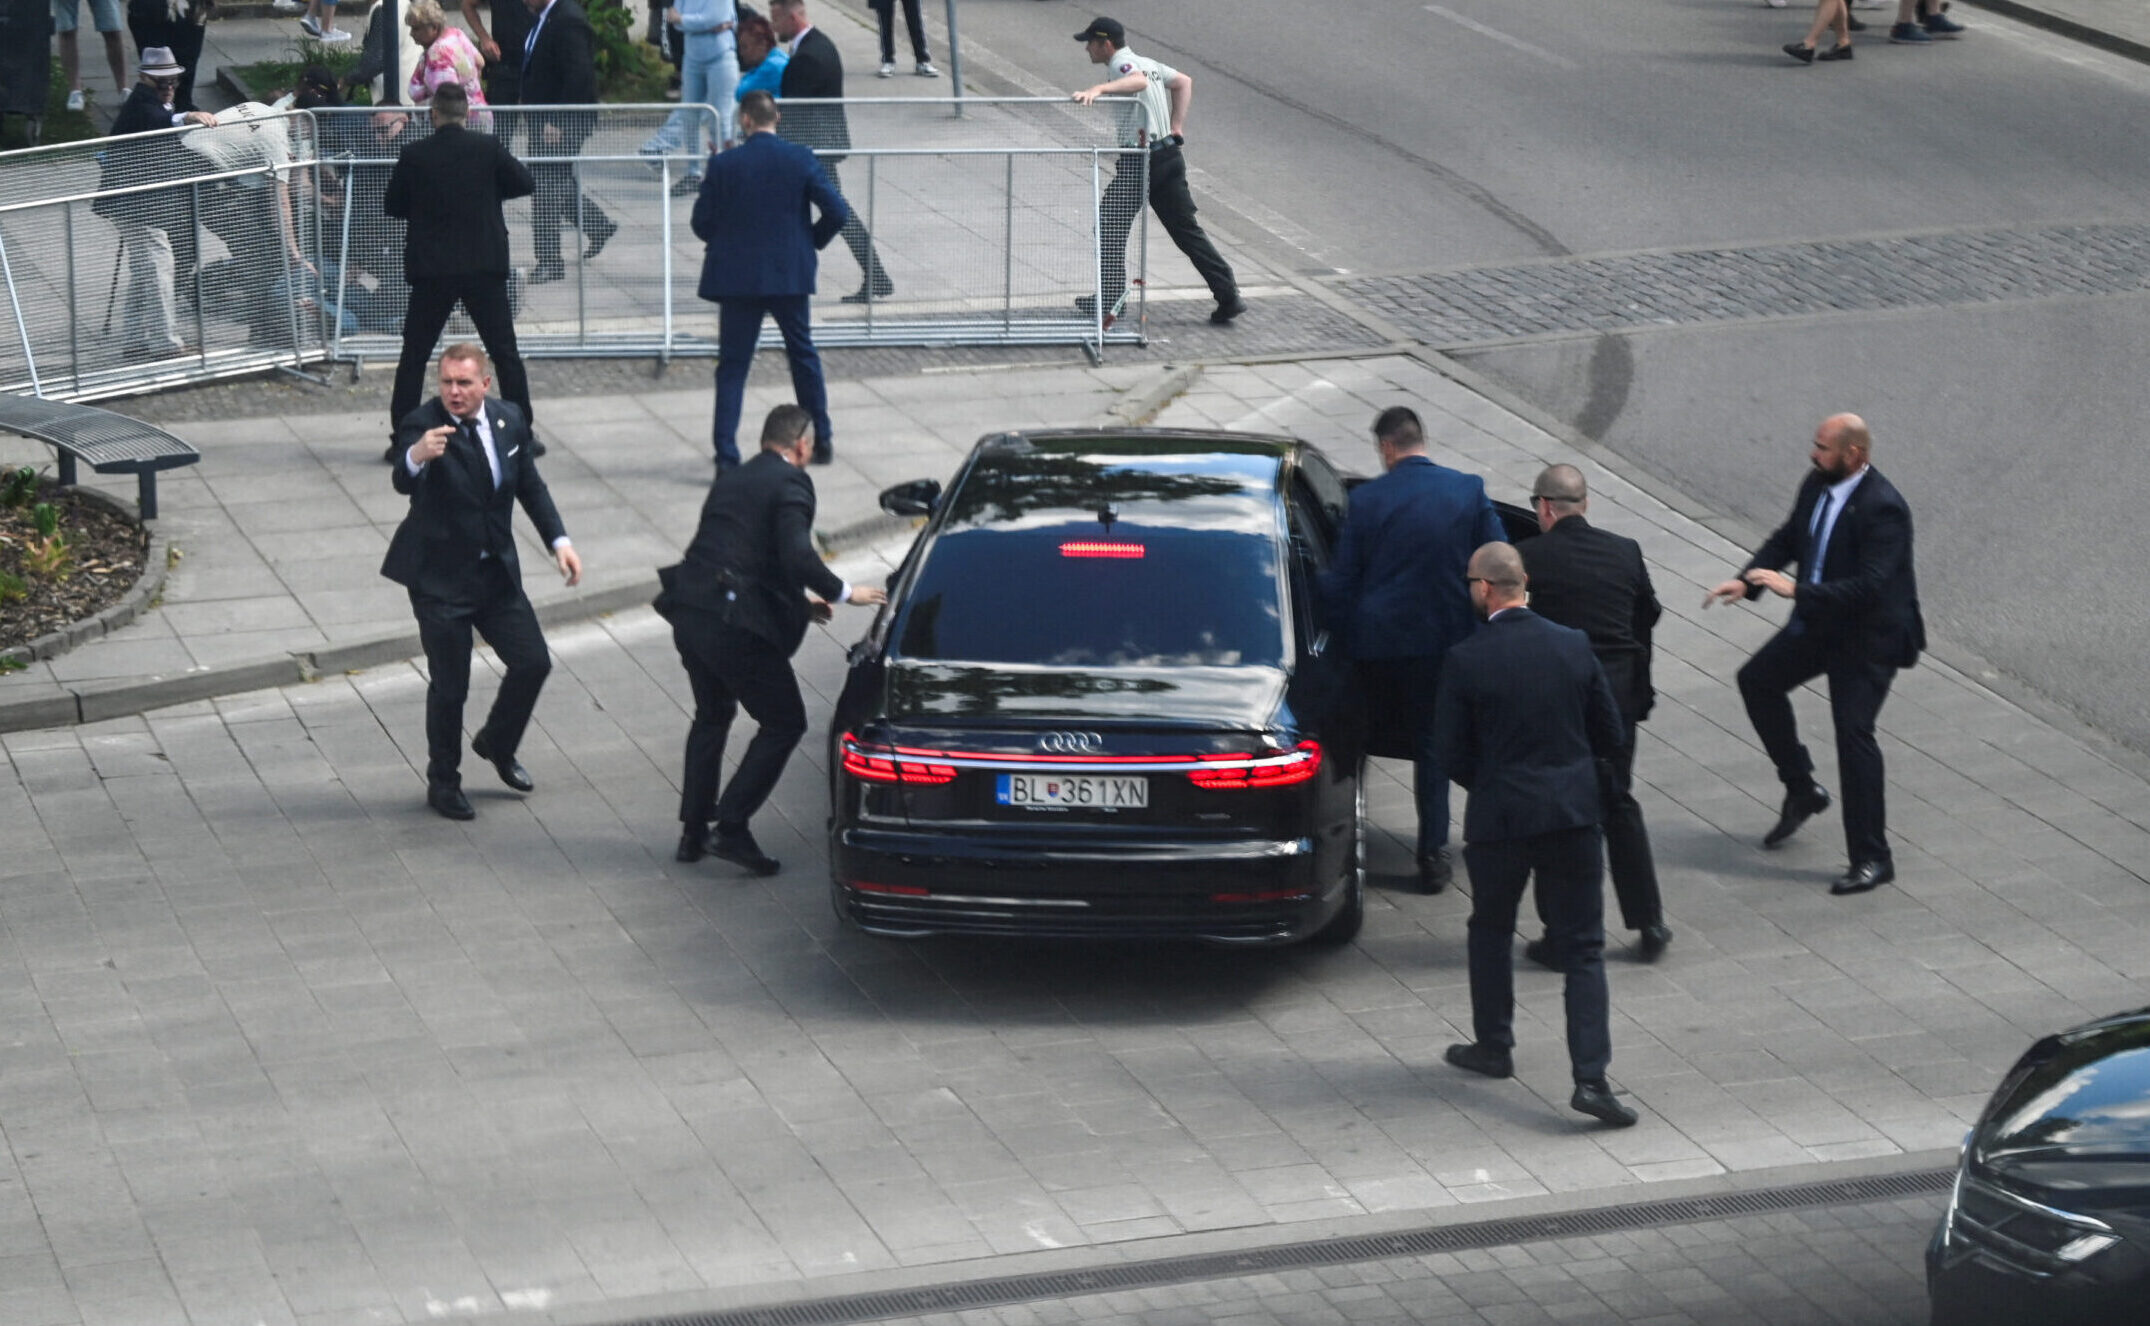 Primeiro-ministro da Eslováquia está em estado crítico após tentativa de assassinato